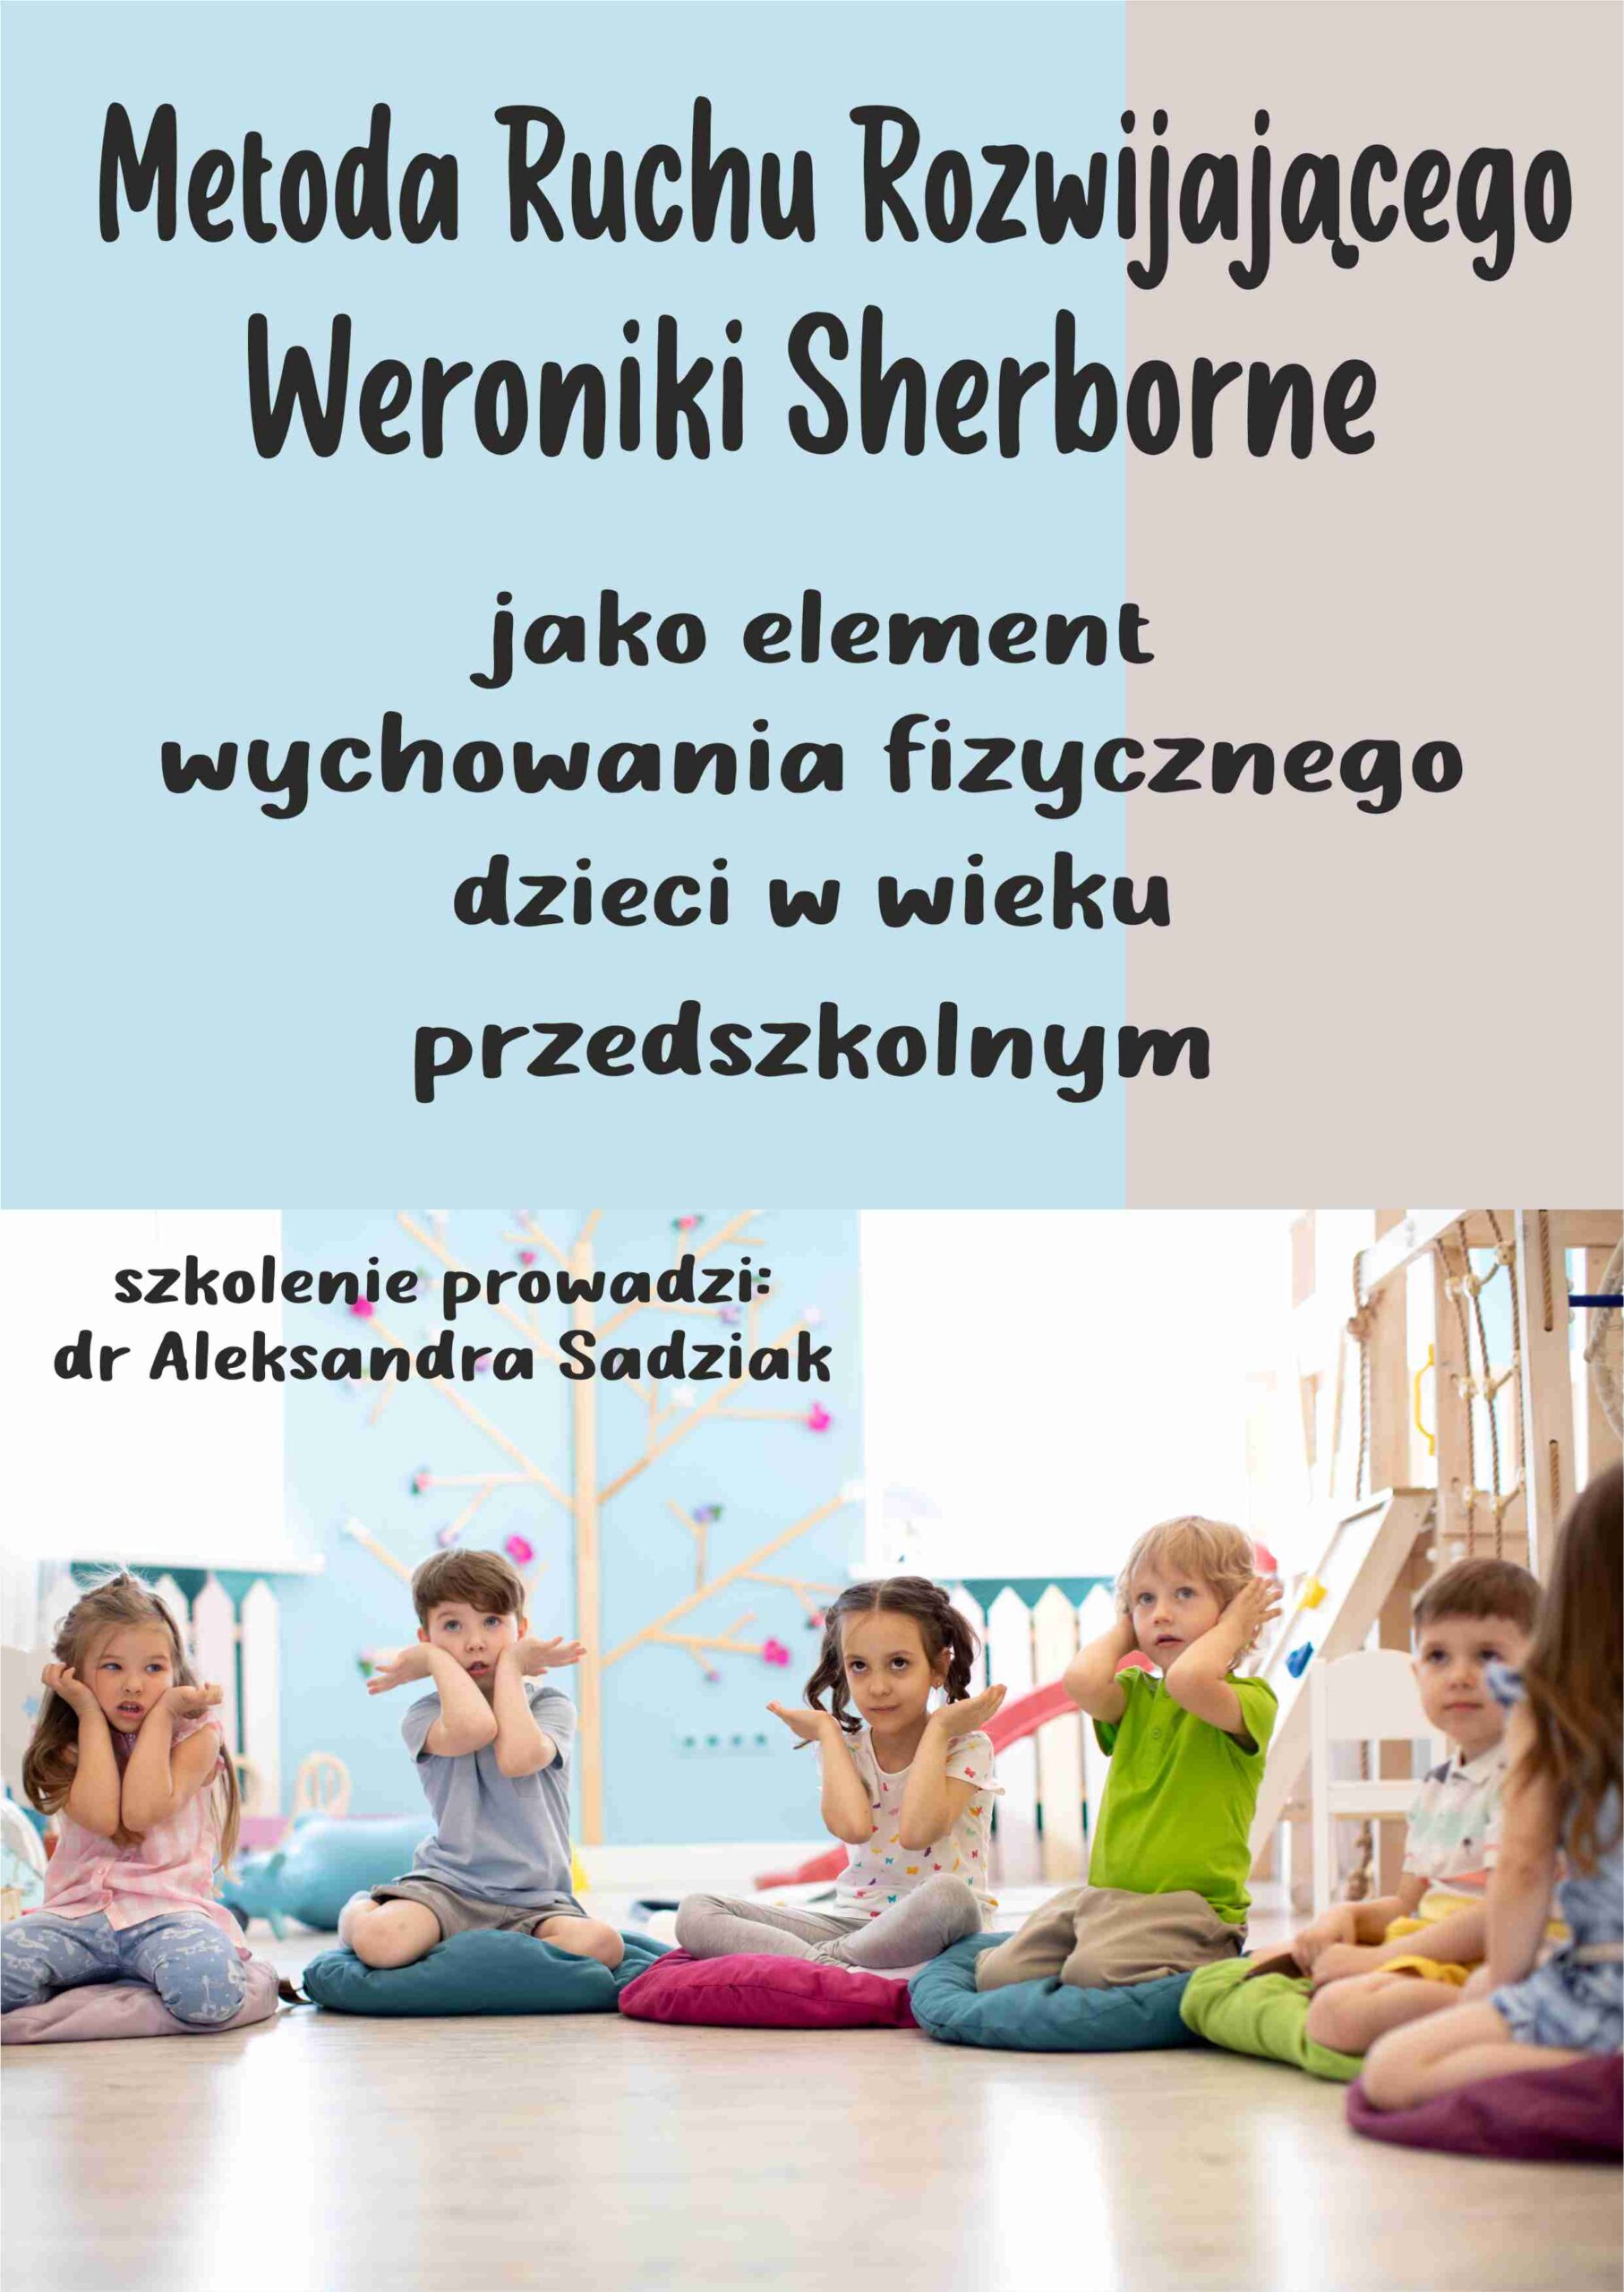 Metoda Ruchu Rozwijającego Weroniki Sherborne jako element wychowania fizycznego dzieci w wieku przedszkolnym i wczesnoszkolnym